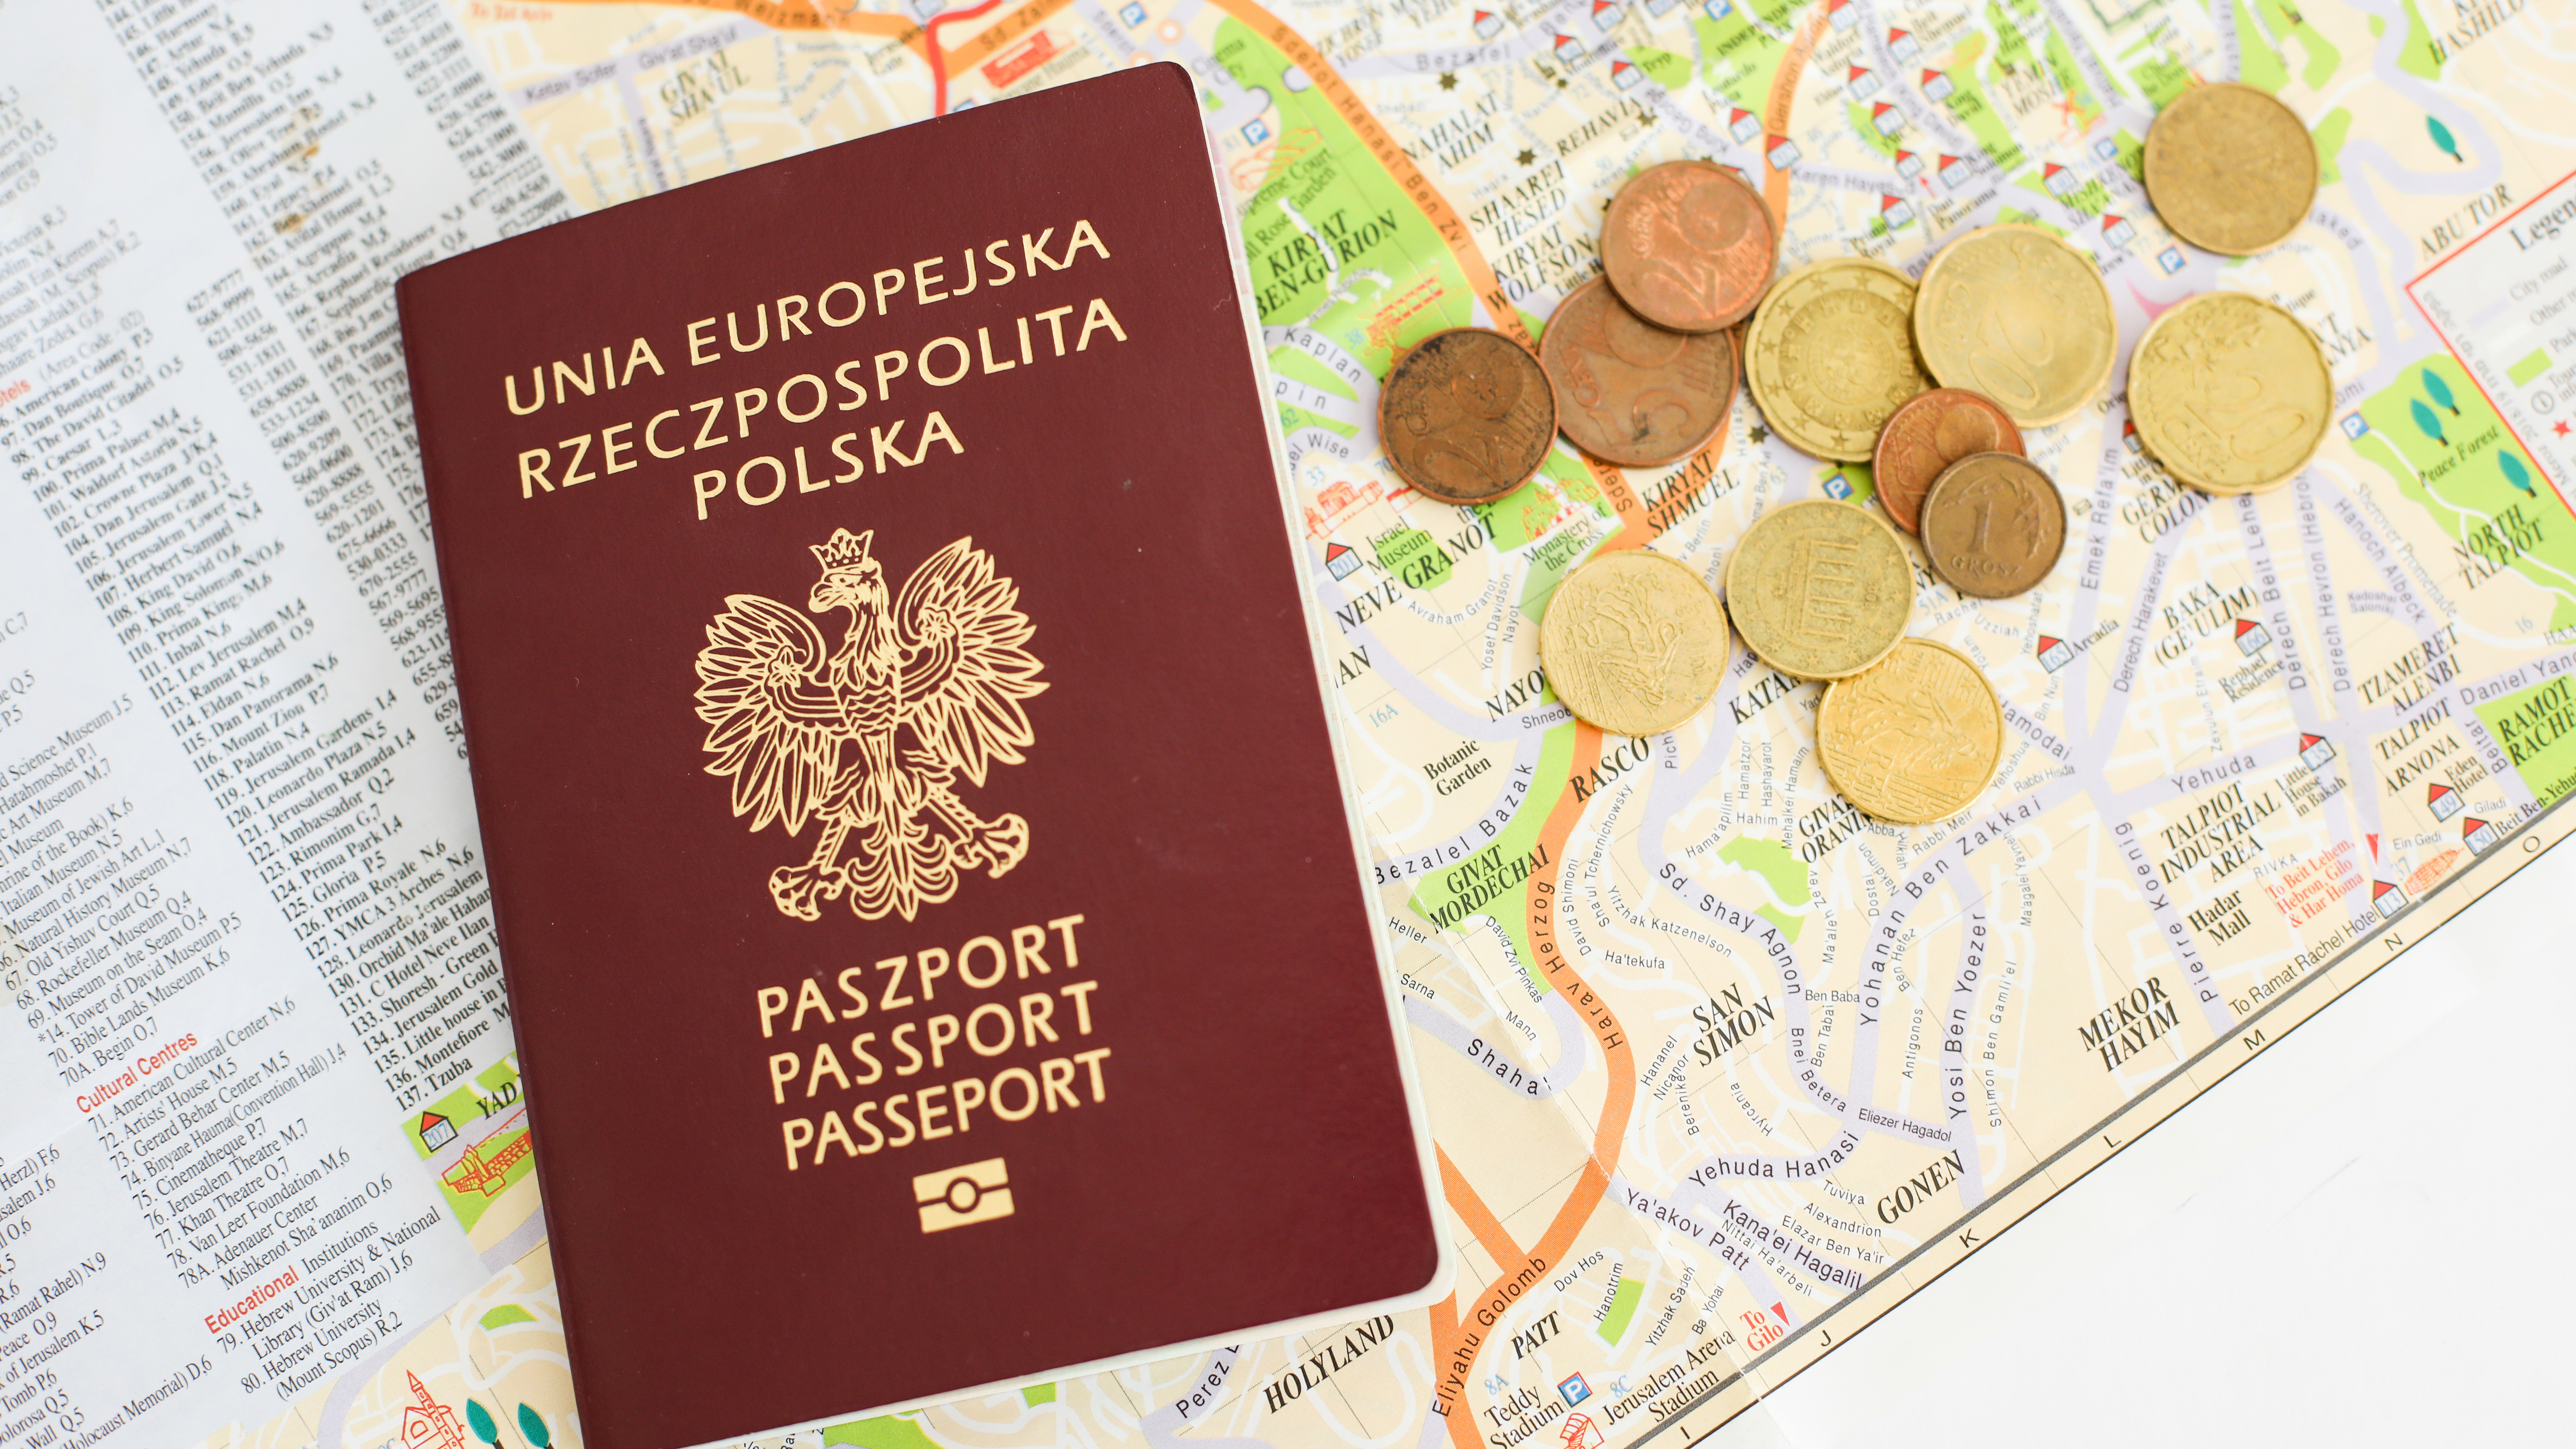 Как получить гражданство Польши и паспорт на законных основаниях?